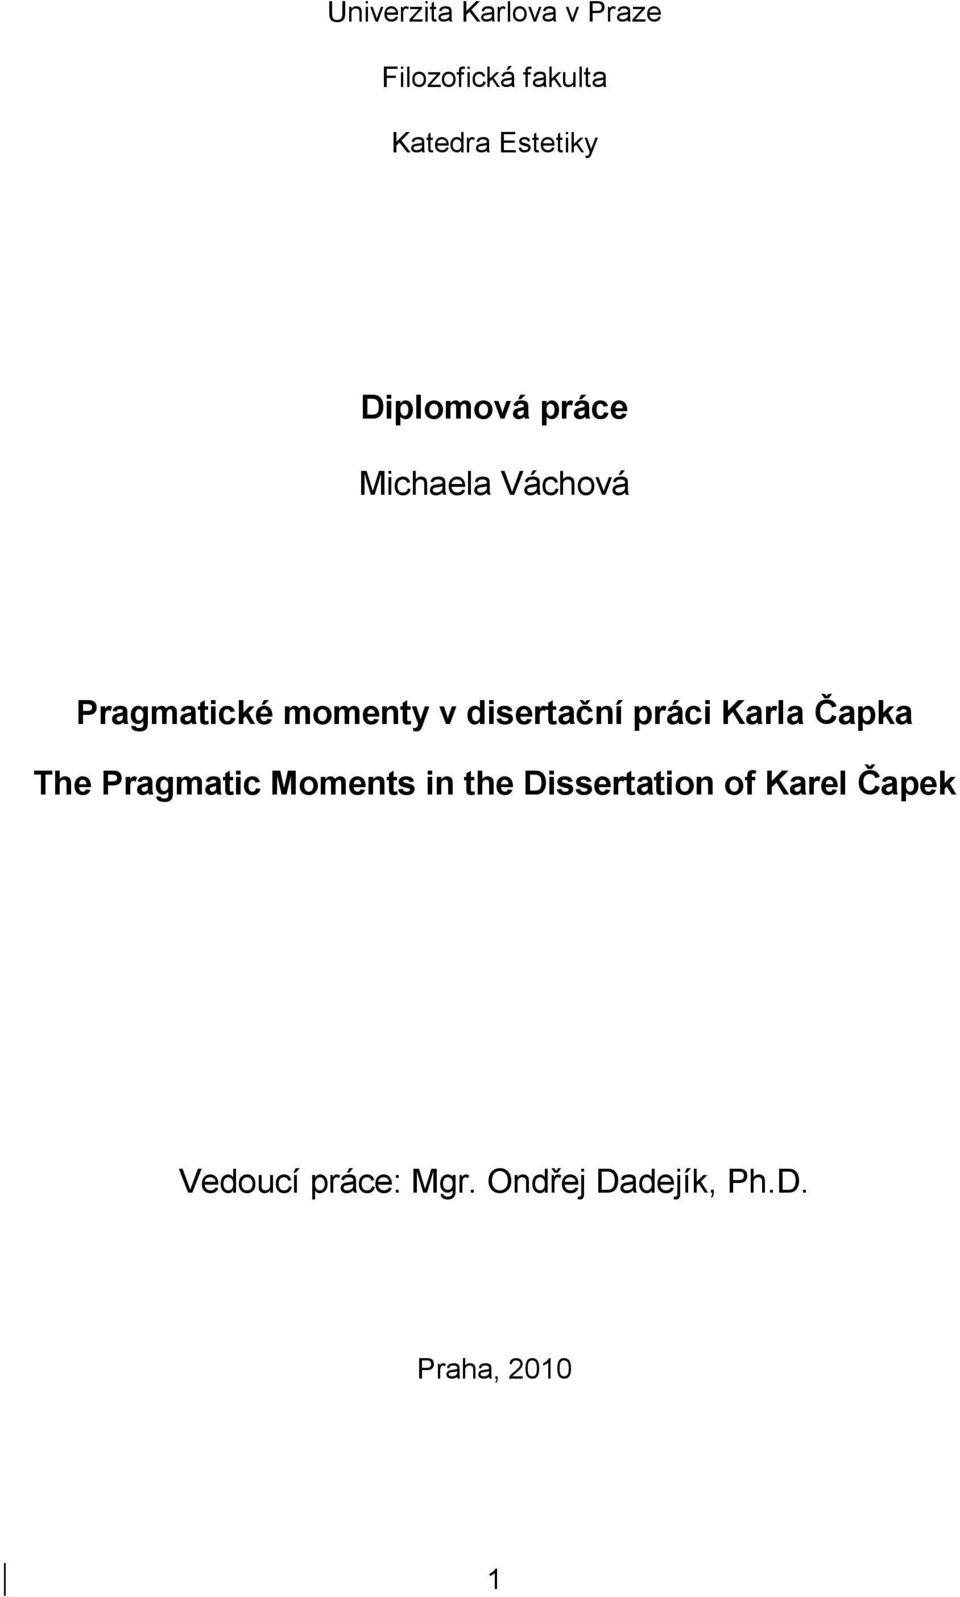 Diplomová práce. Michaela Váchová. Pragmatické momenty v disertační práci  Karla Čapka. The Pragmatic Moments in the Dissertation of Karel Čapek - PDF  Free Download